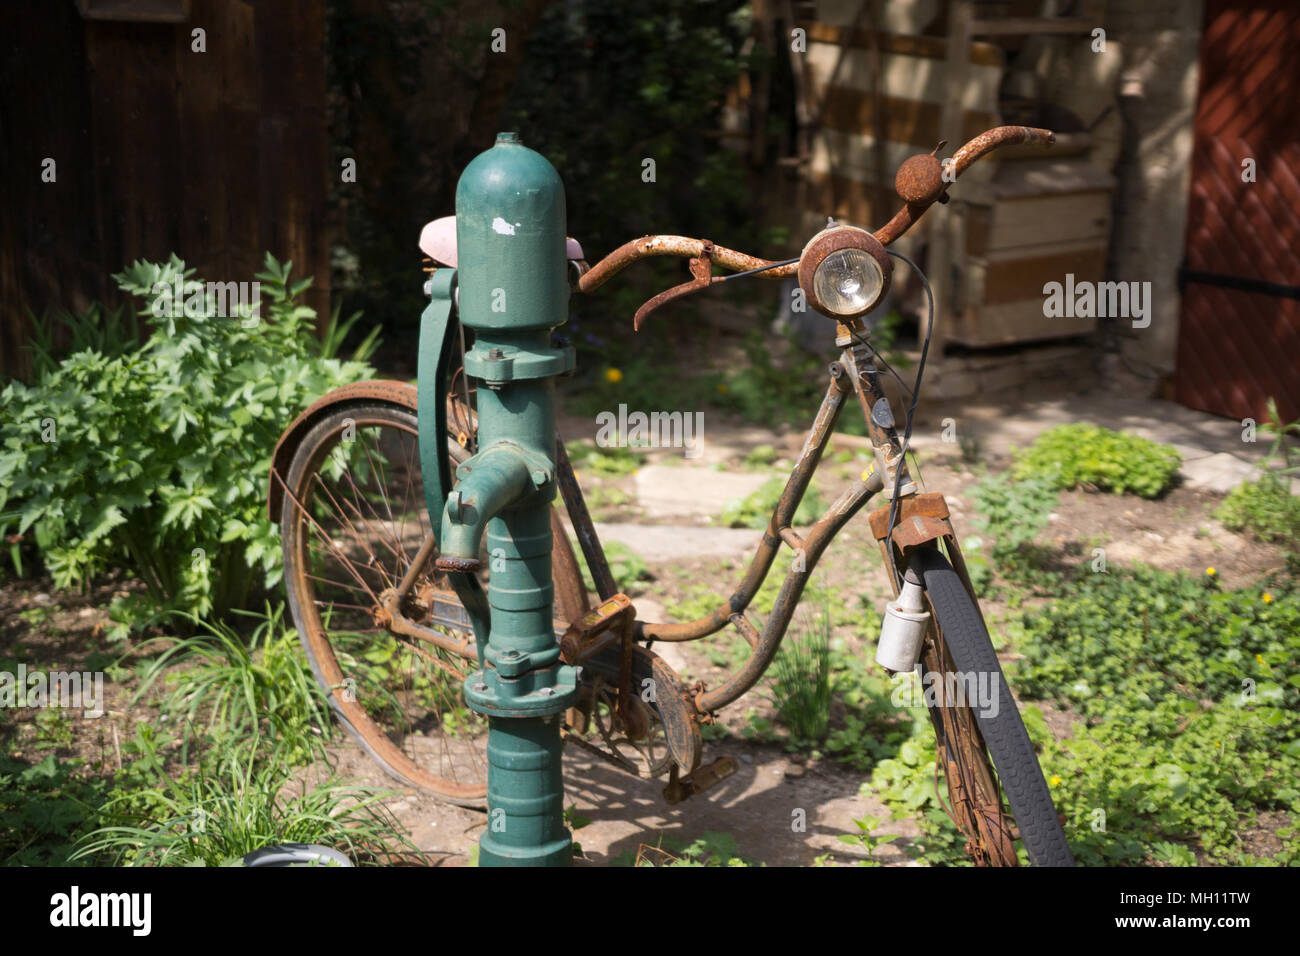 Un vieux vélo rouillé appuyé contre une pompe à eau, une partie de  l'expérience de vin Loisium au musée, Loisium Langenlois, Basse Autriche  Photo Stock - Alamy